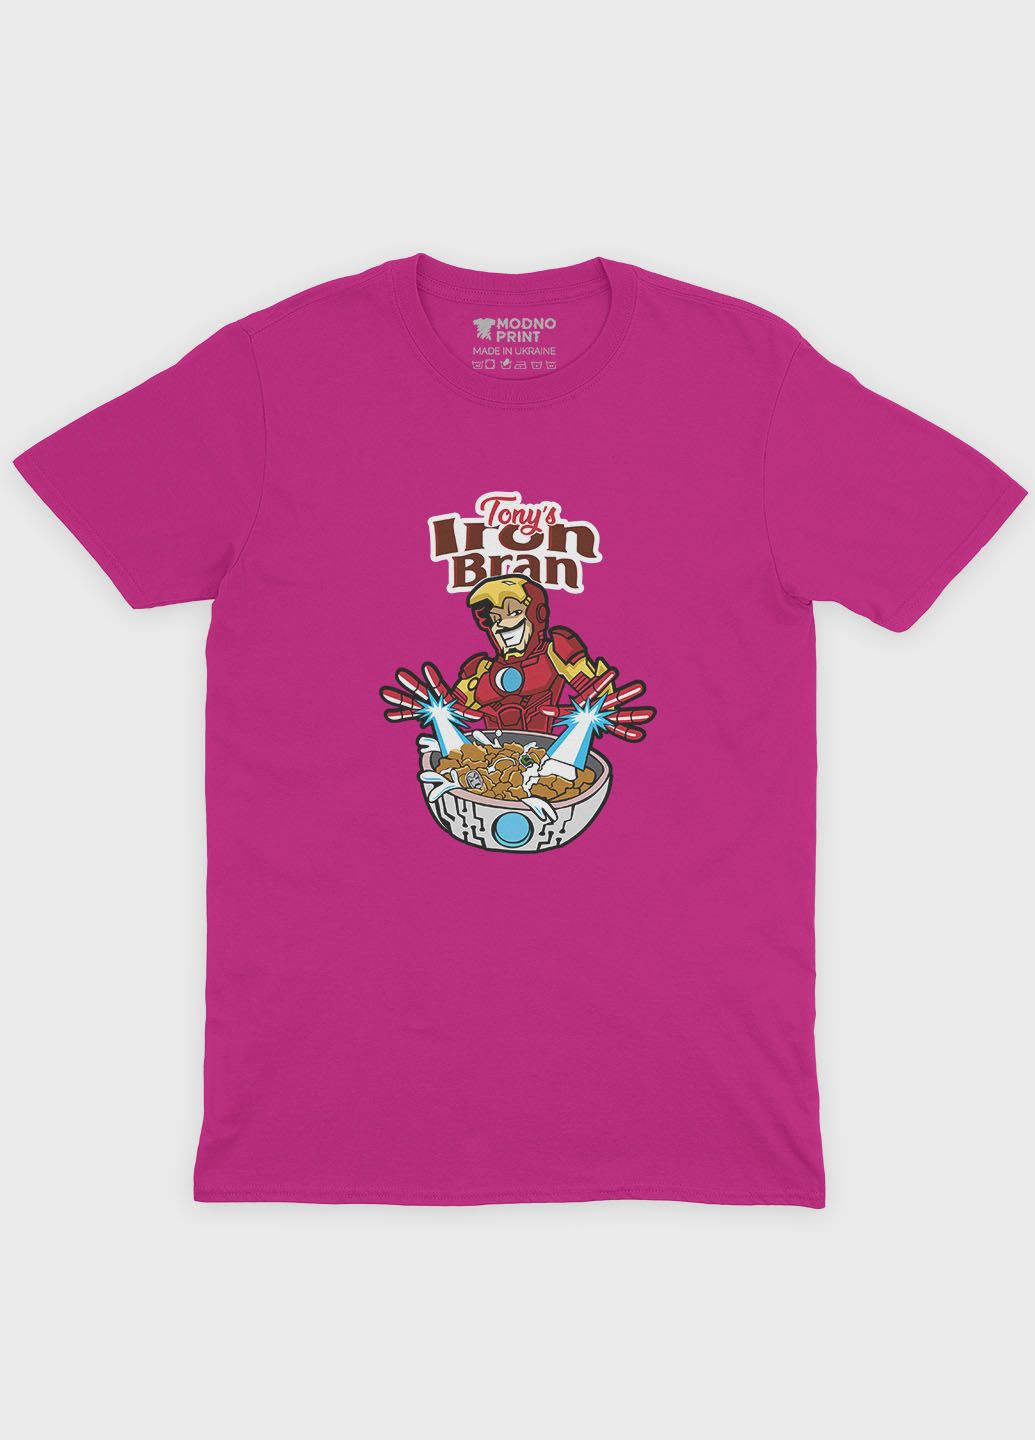 Рожева демісезонна футболка для хлопчика з принтом супергероя - залізна людина (ts001-1-fuxj-006-016-013-b) Modno